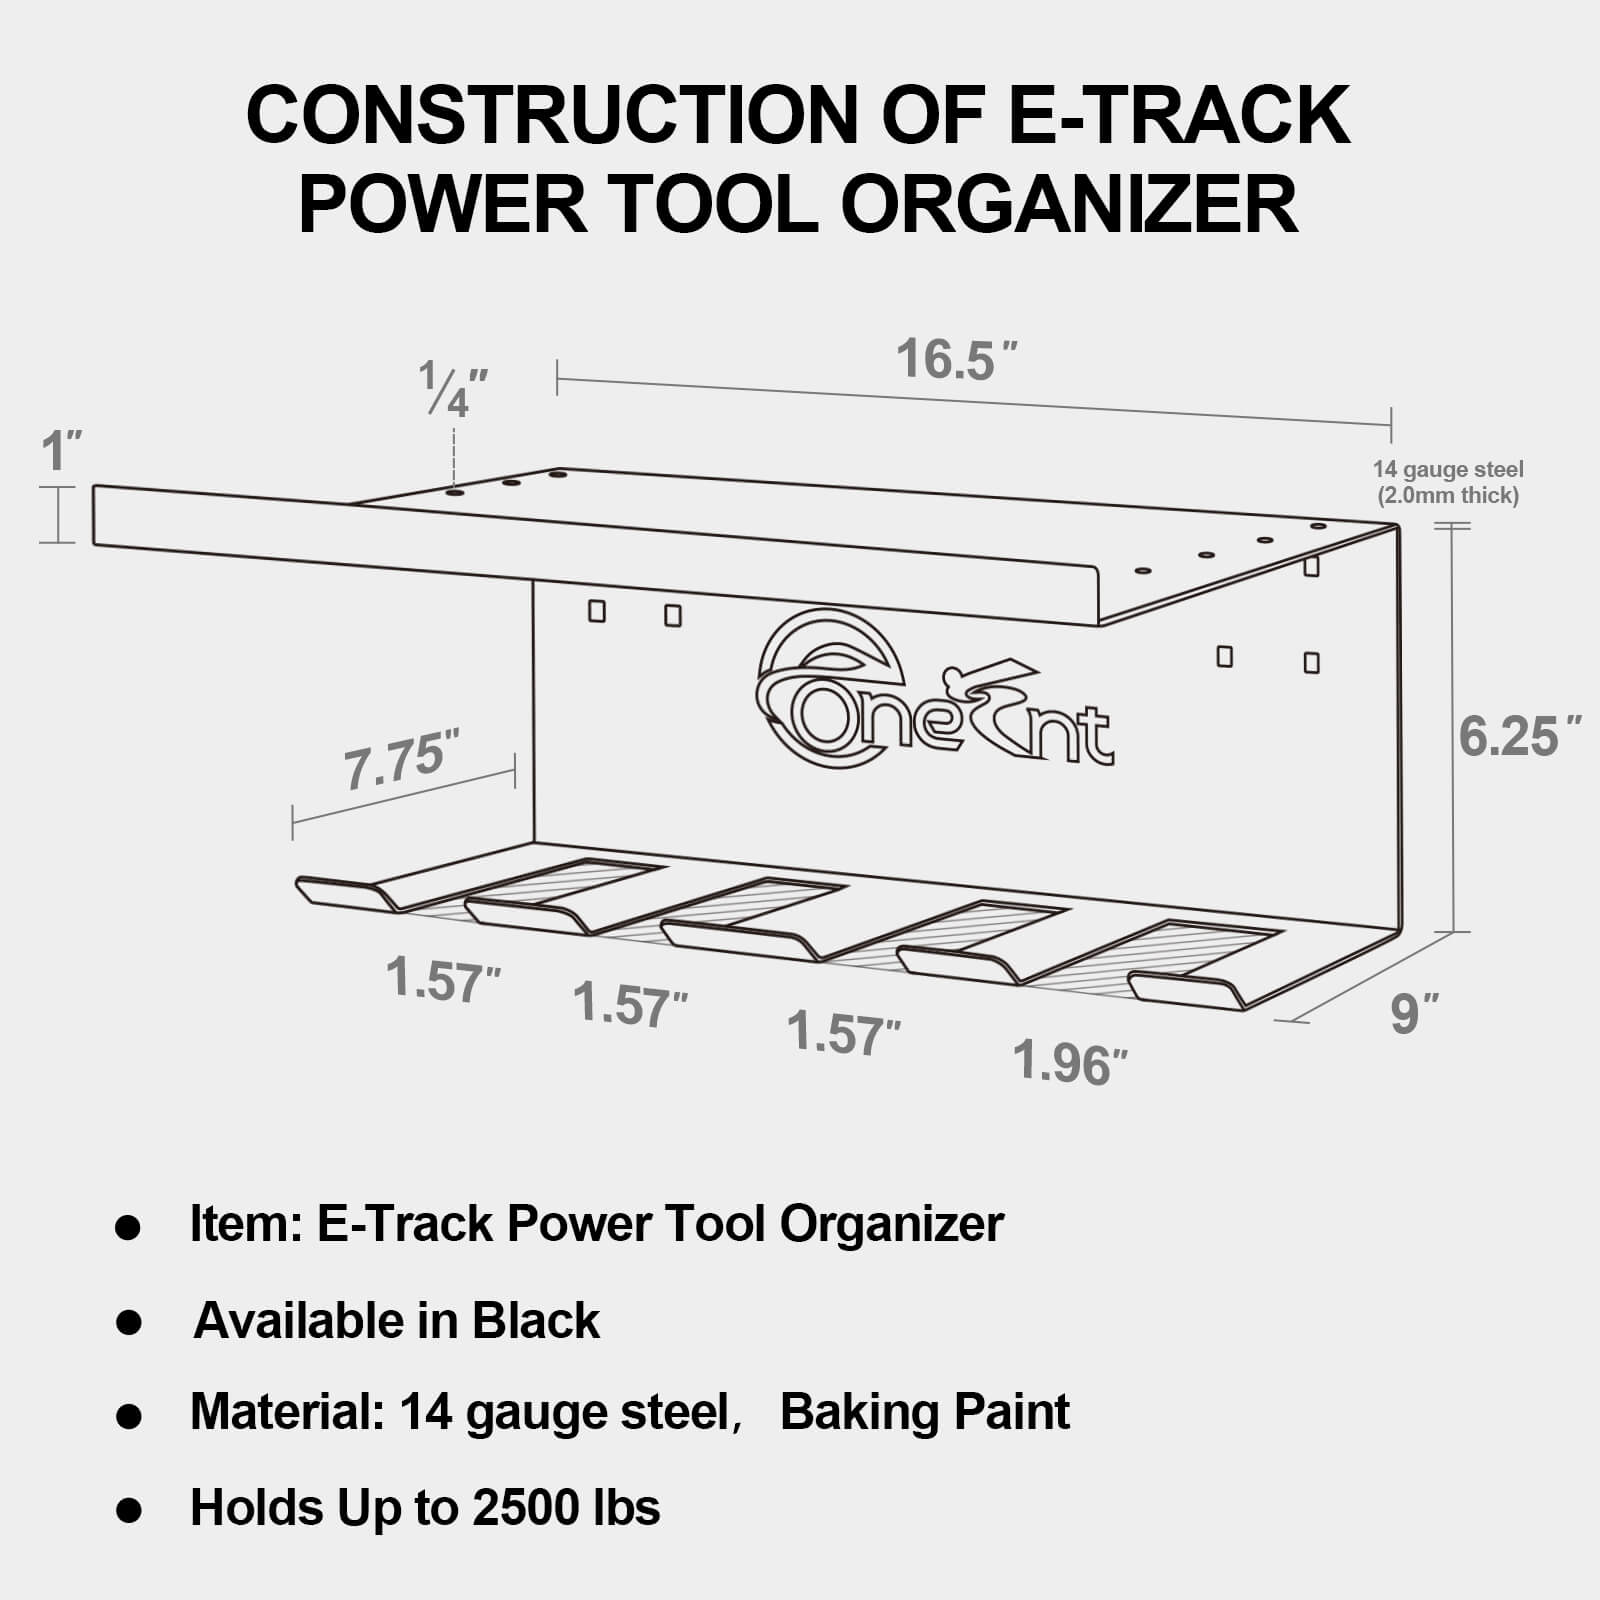 E-Track Power Tool Organizer